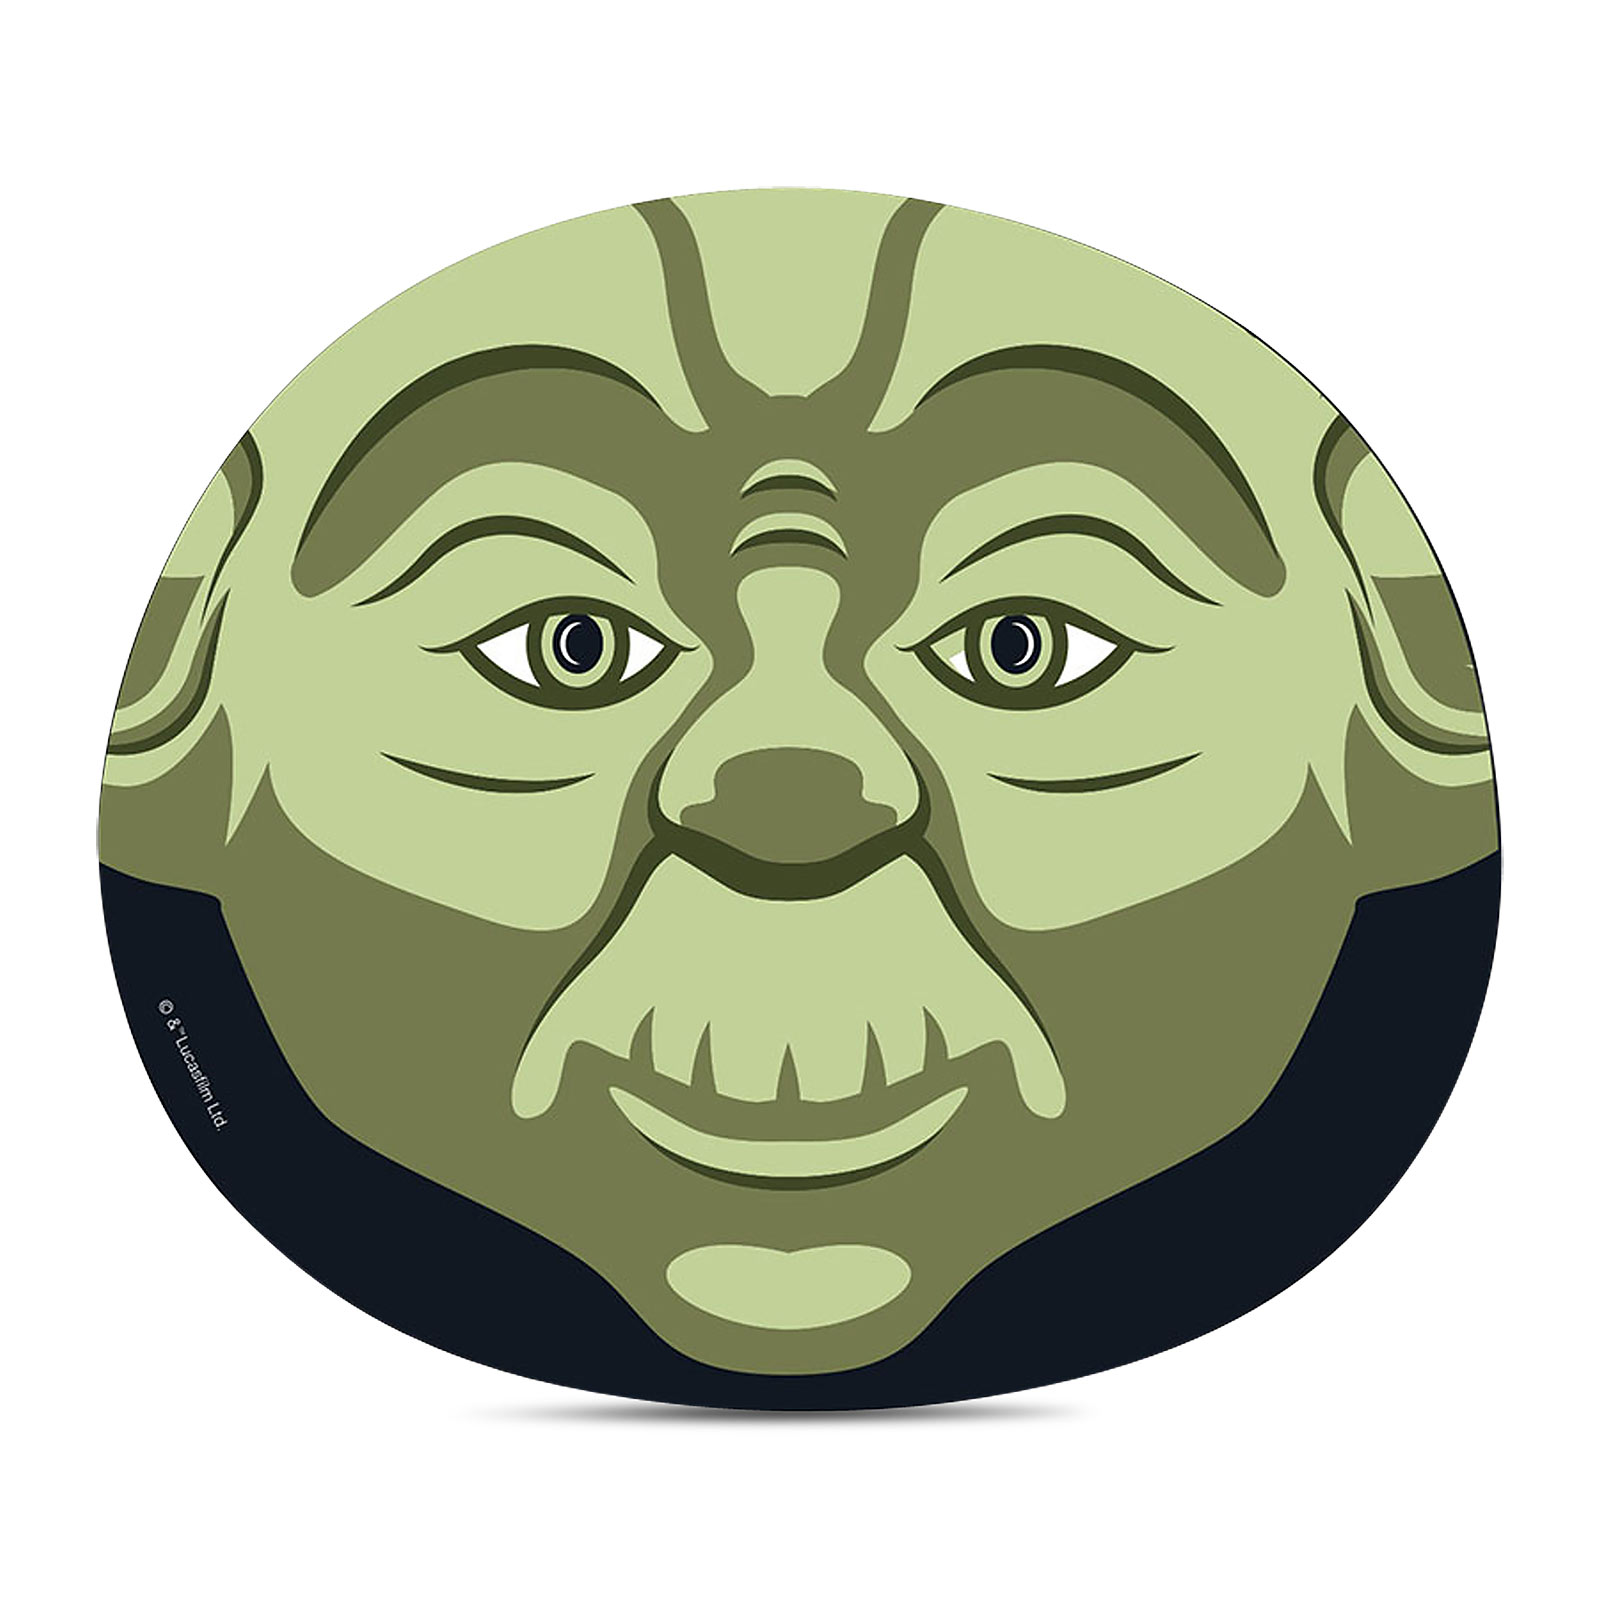 Star Wars - Characters Sheet Masks Set of 4